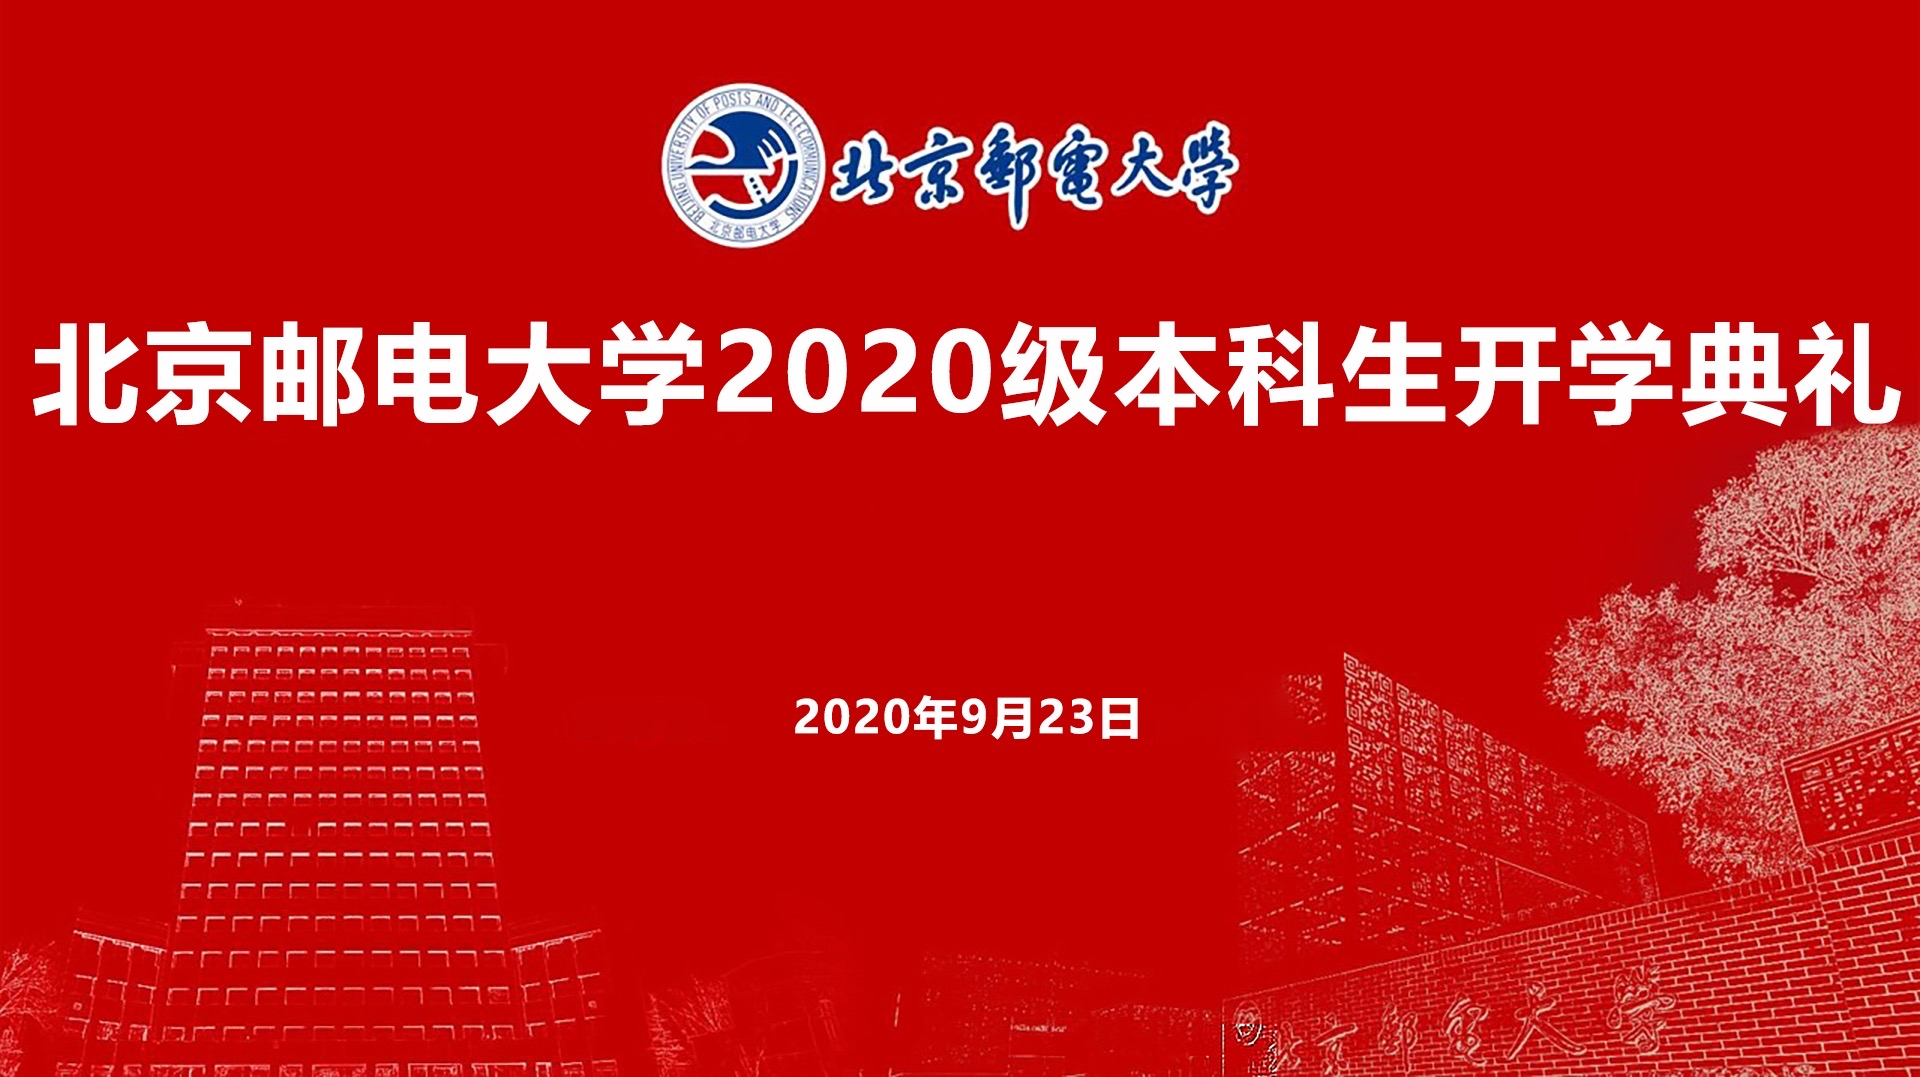 北京邮电大学2020级本科生开学典礼